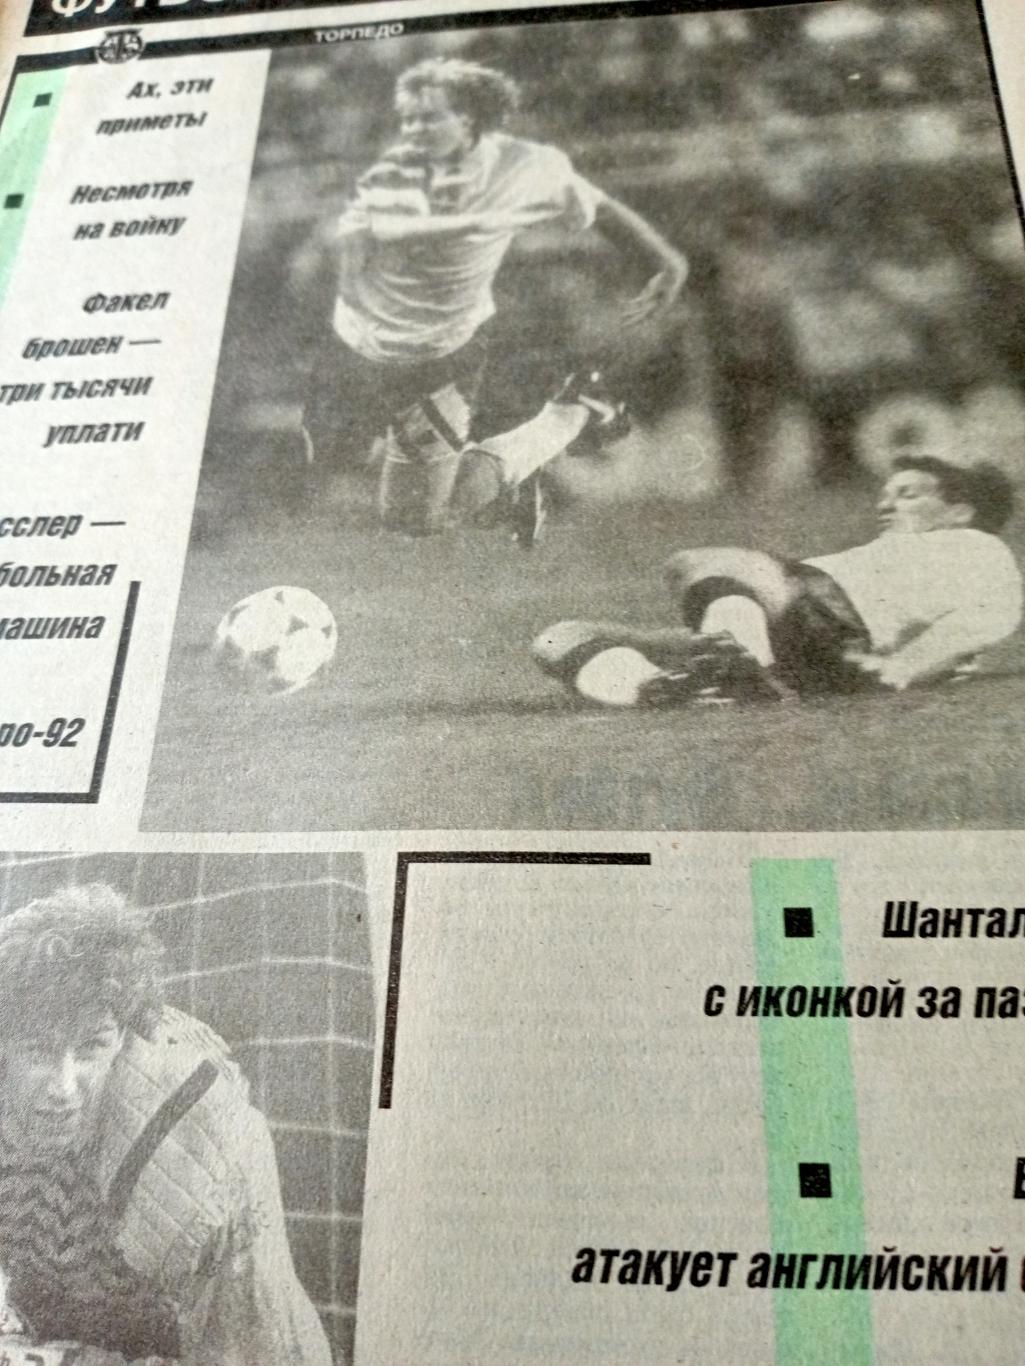 Английский футбол. Футбольный ежемесячник. 1992 год, июль